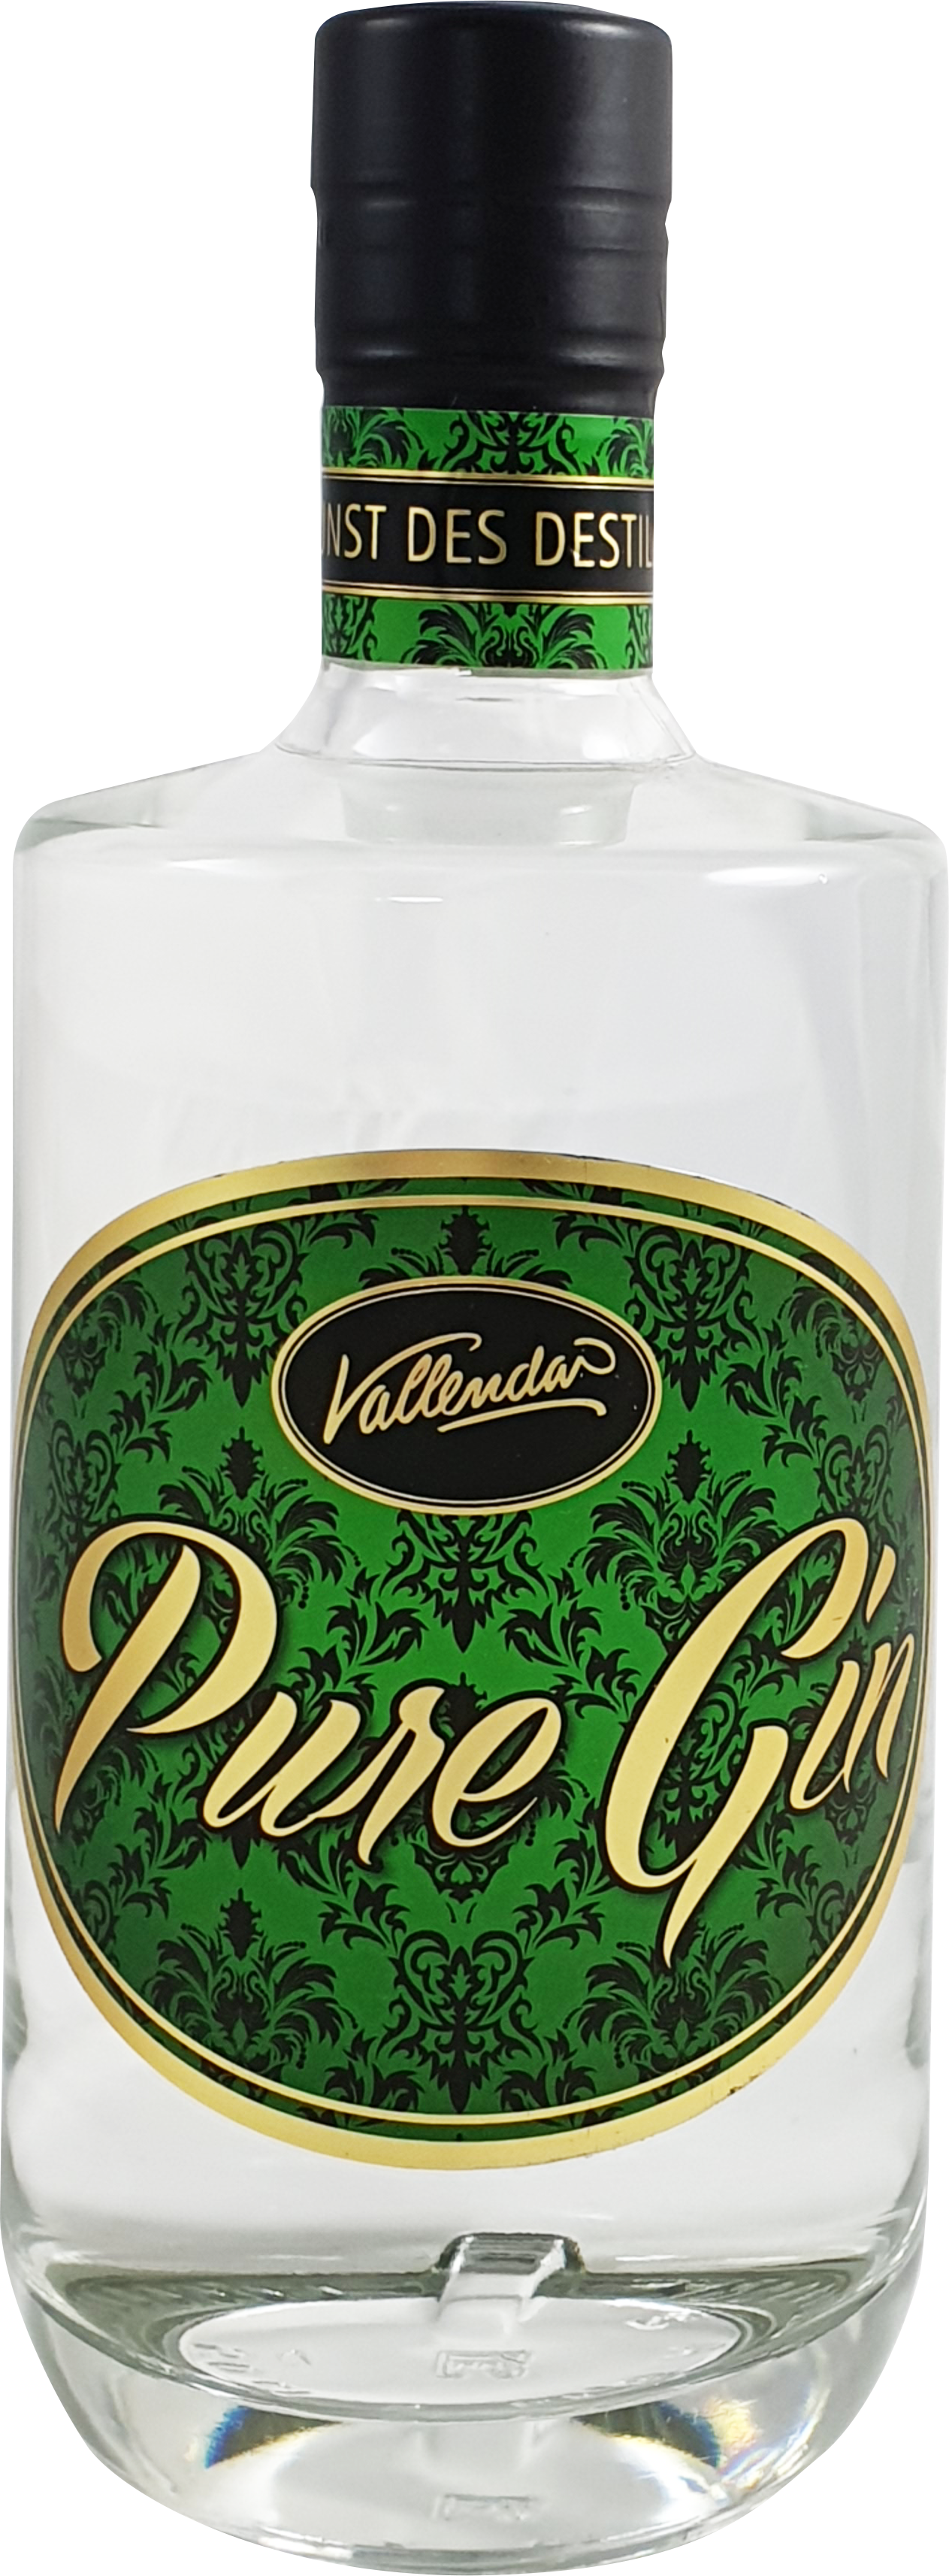 Vallendar Pure Gin 40% Wacholdergeist 